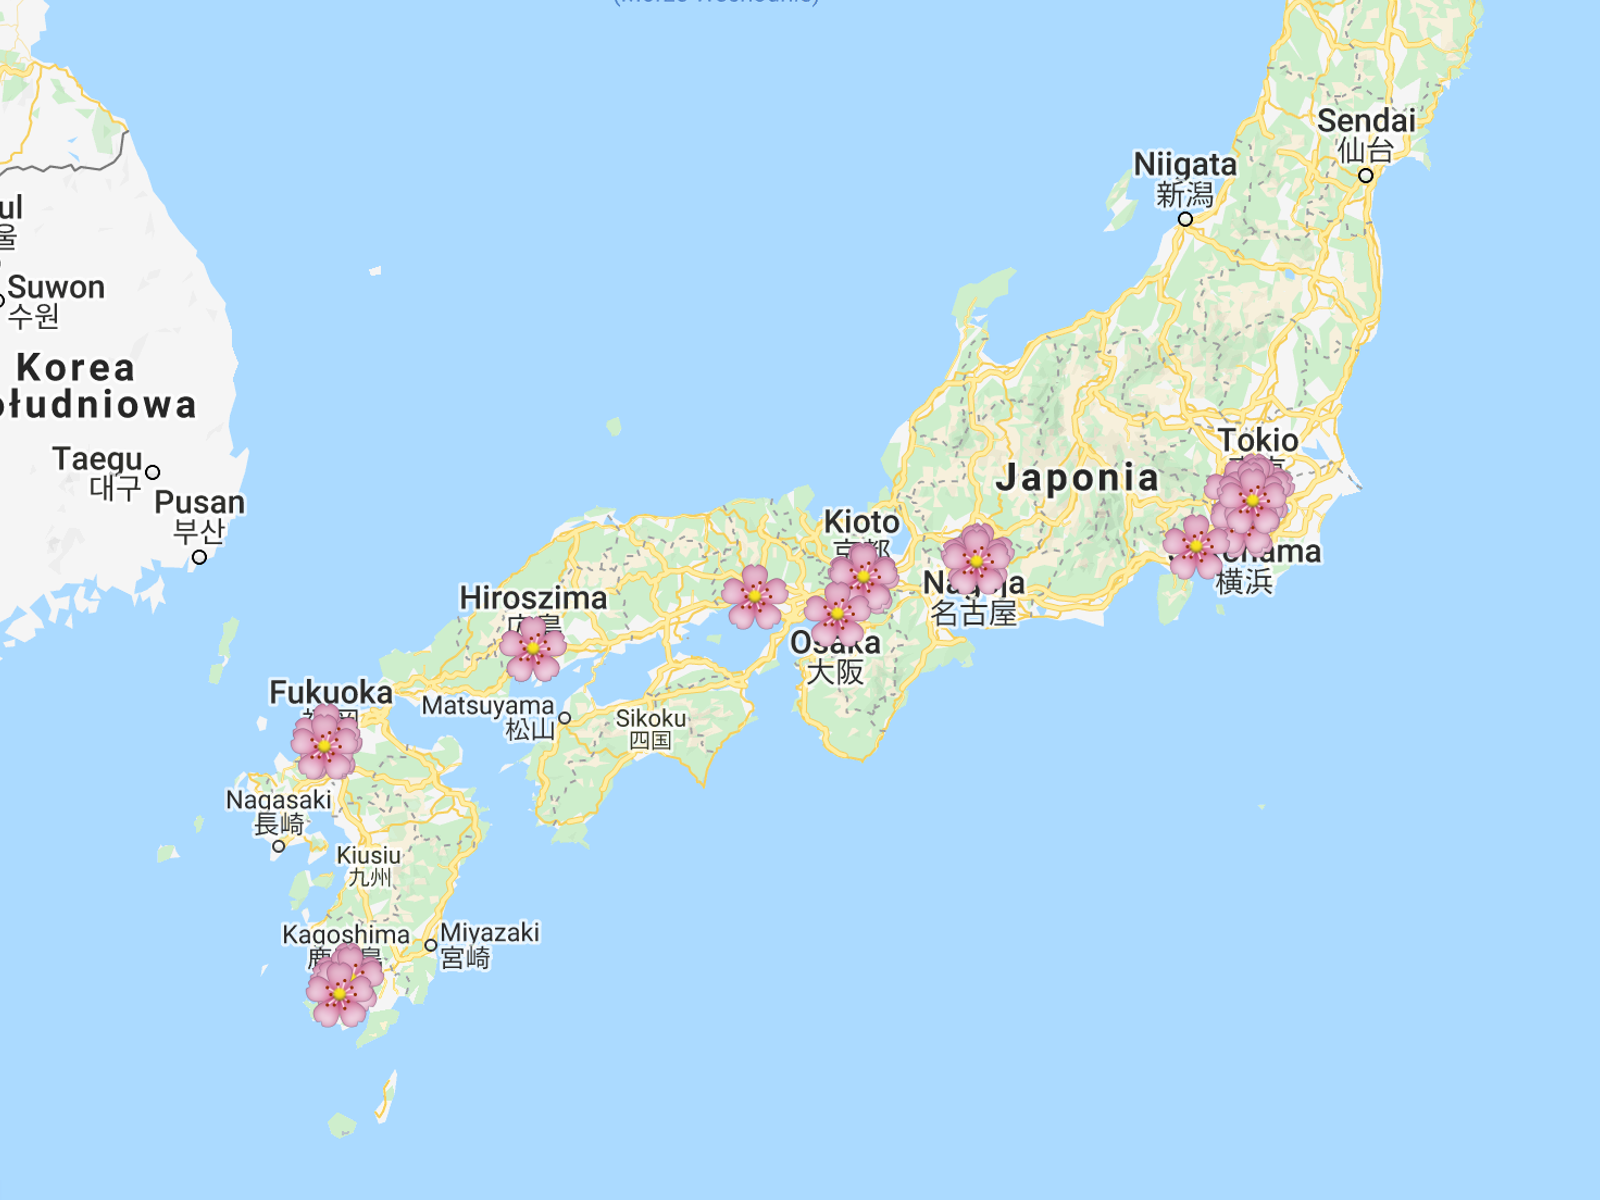 Najlepsze miejsca w Japonii do oglądania kwitnących wiśni (sakura) - mapa